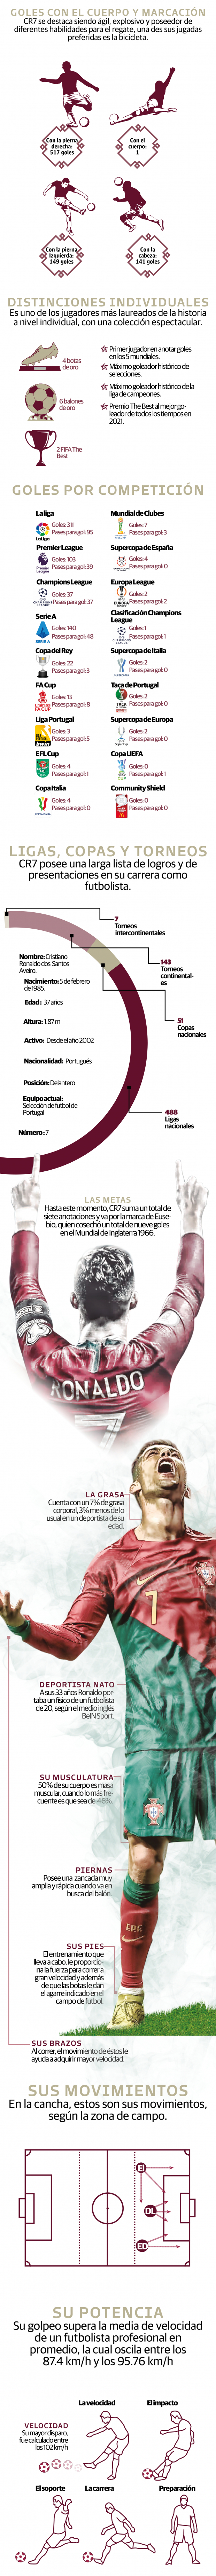 Cristiano Ronaldo y una cita con la historia en Qatar 2022